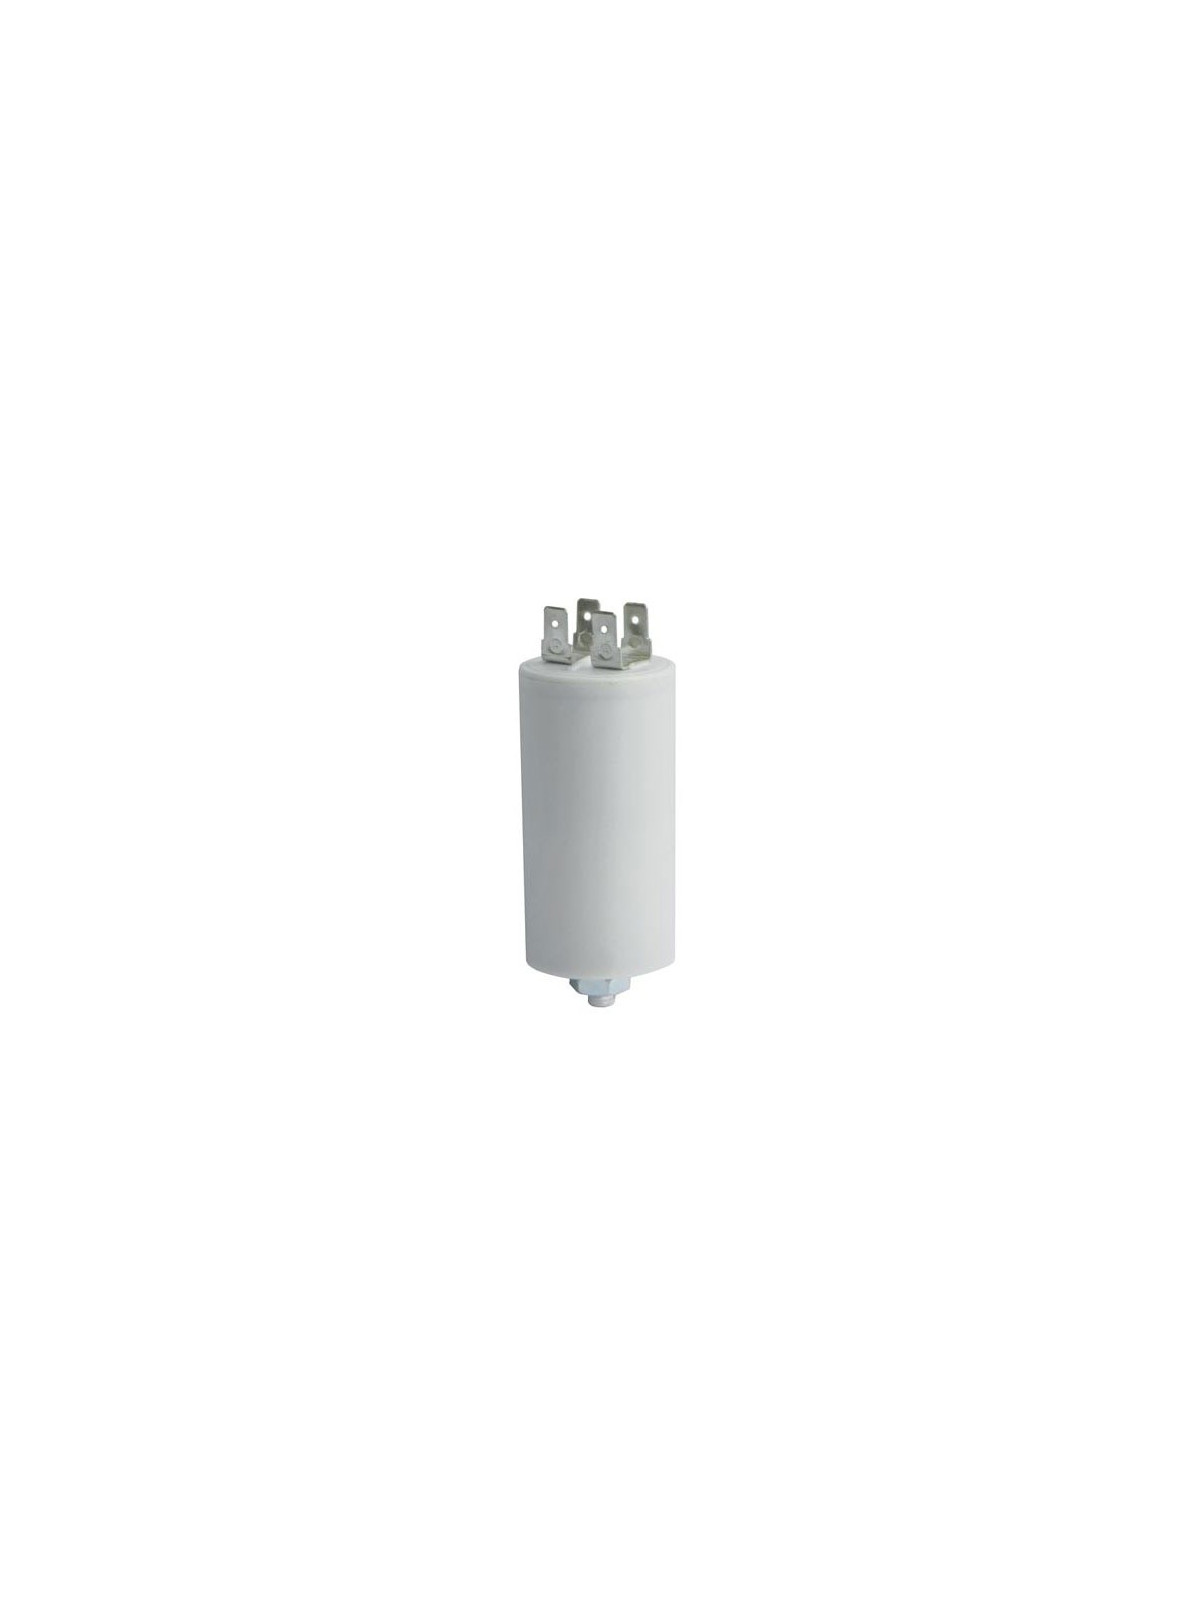 Condensateur de démarrage 8μF - 400 / 450V - Lave linge & sèche linge